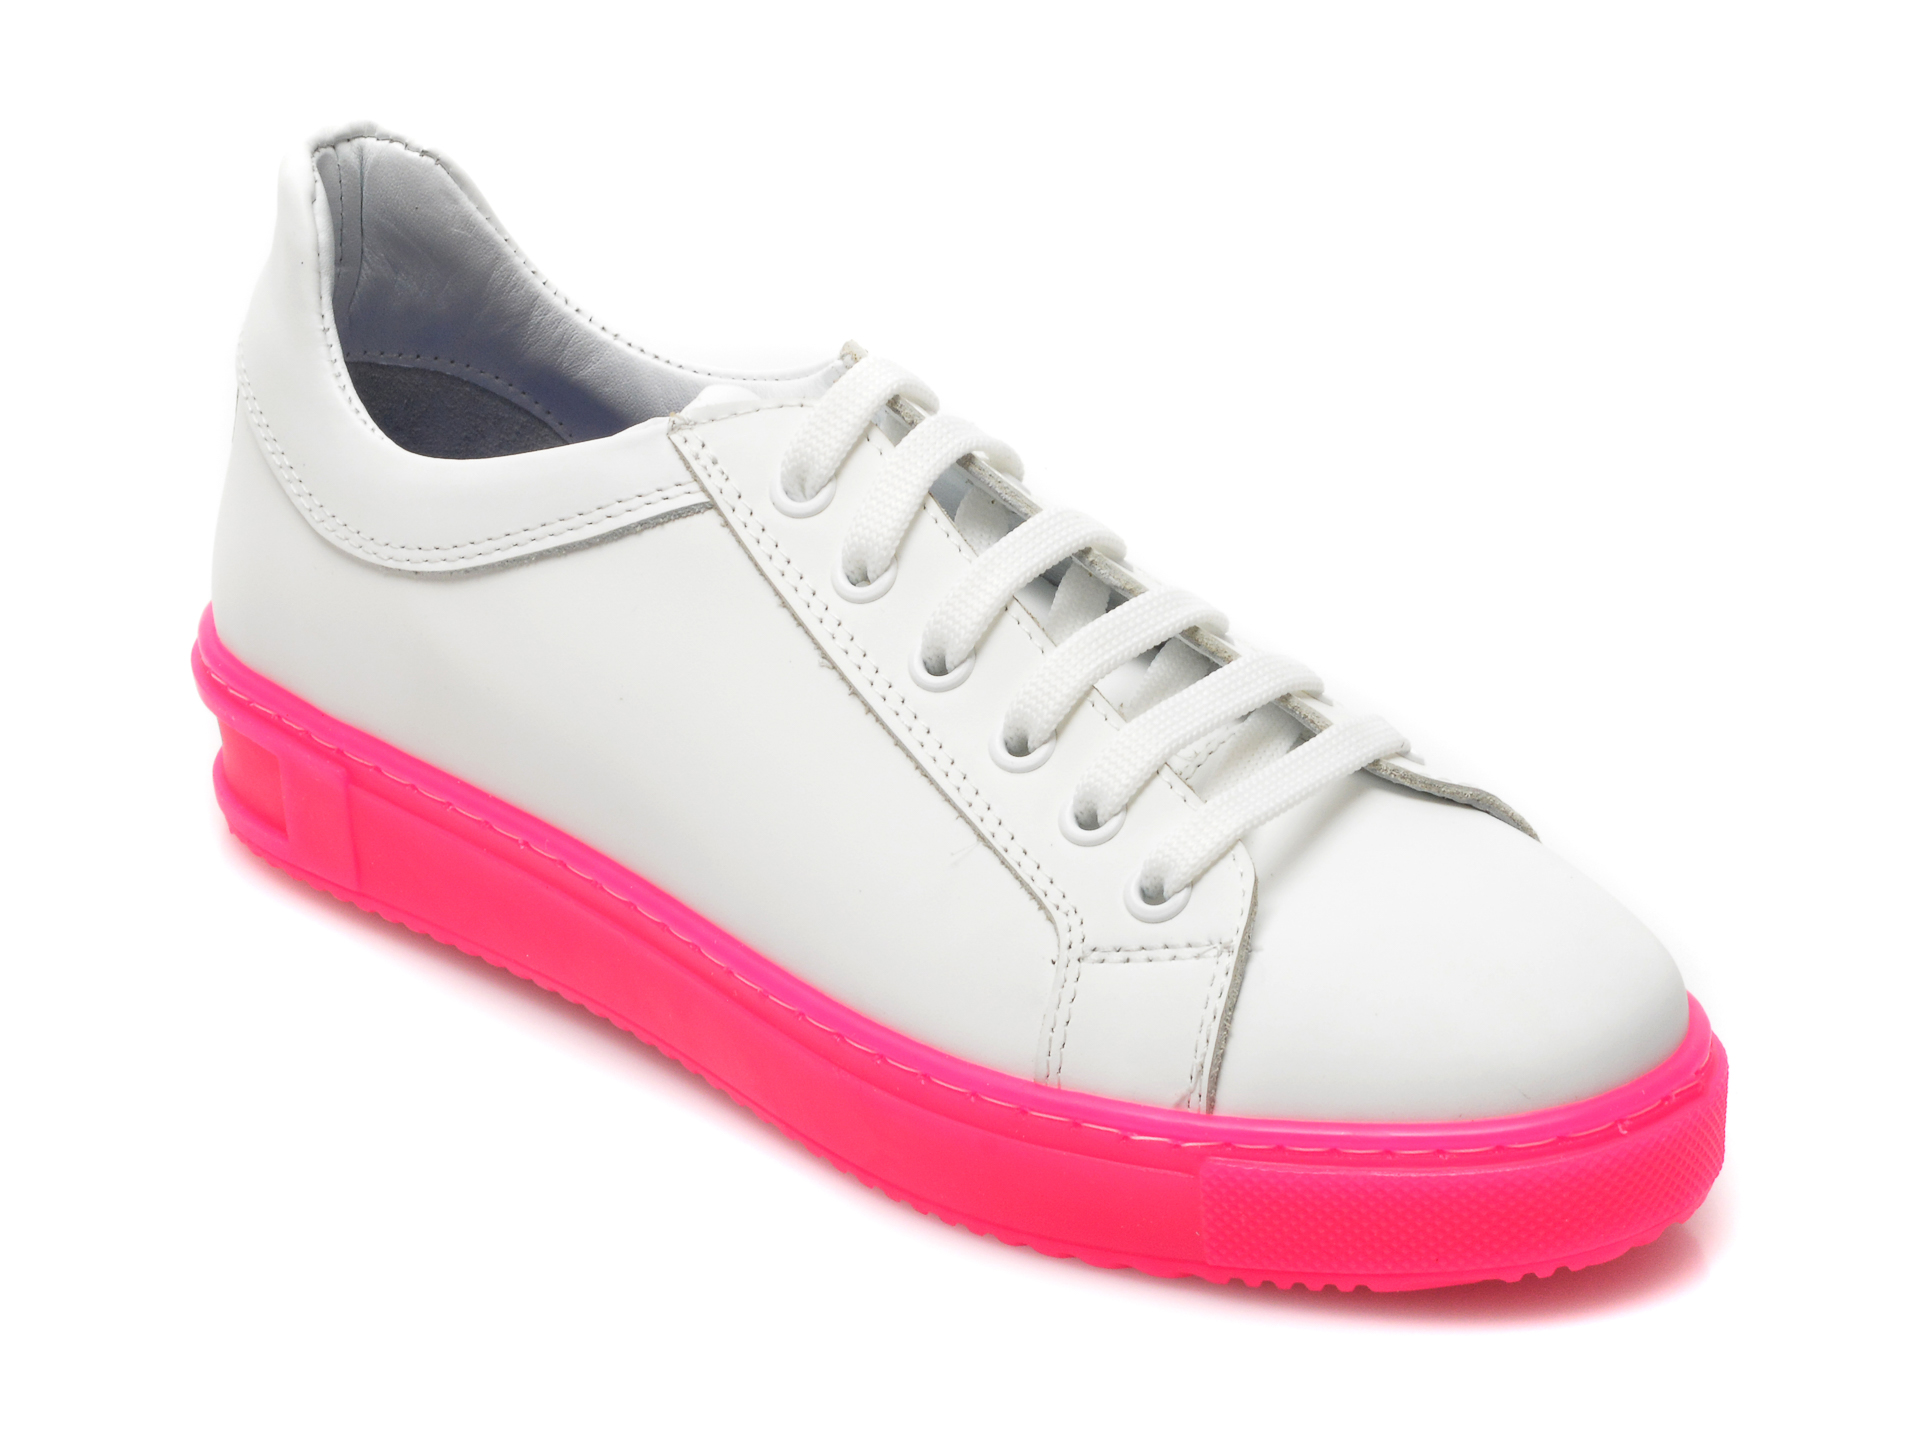 Pantofi sport BESTELLO albi, 1011, din piele naturala BESTELLO imagine noua